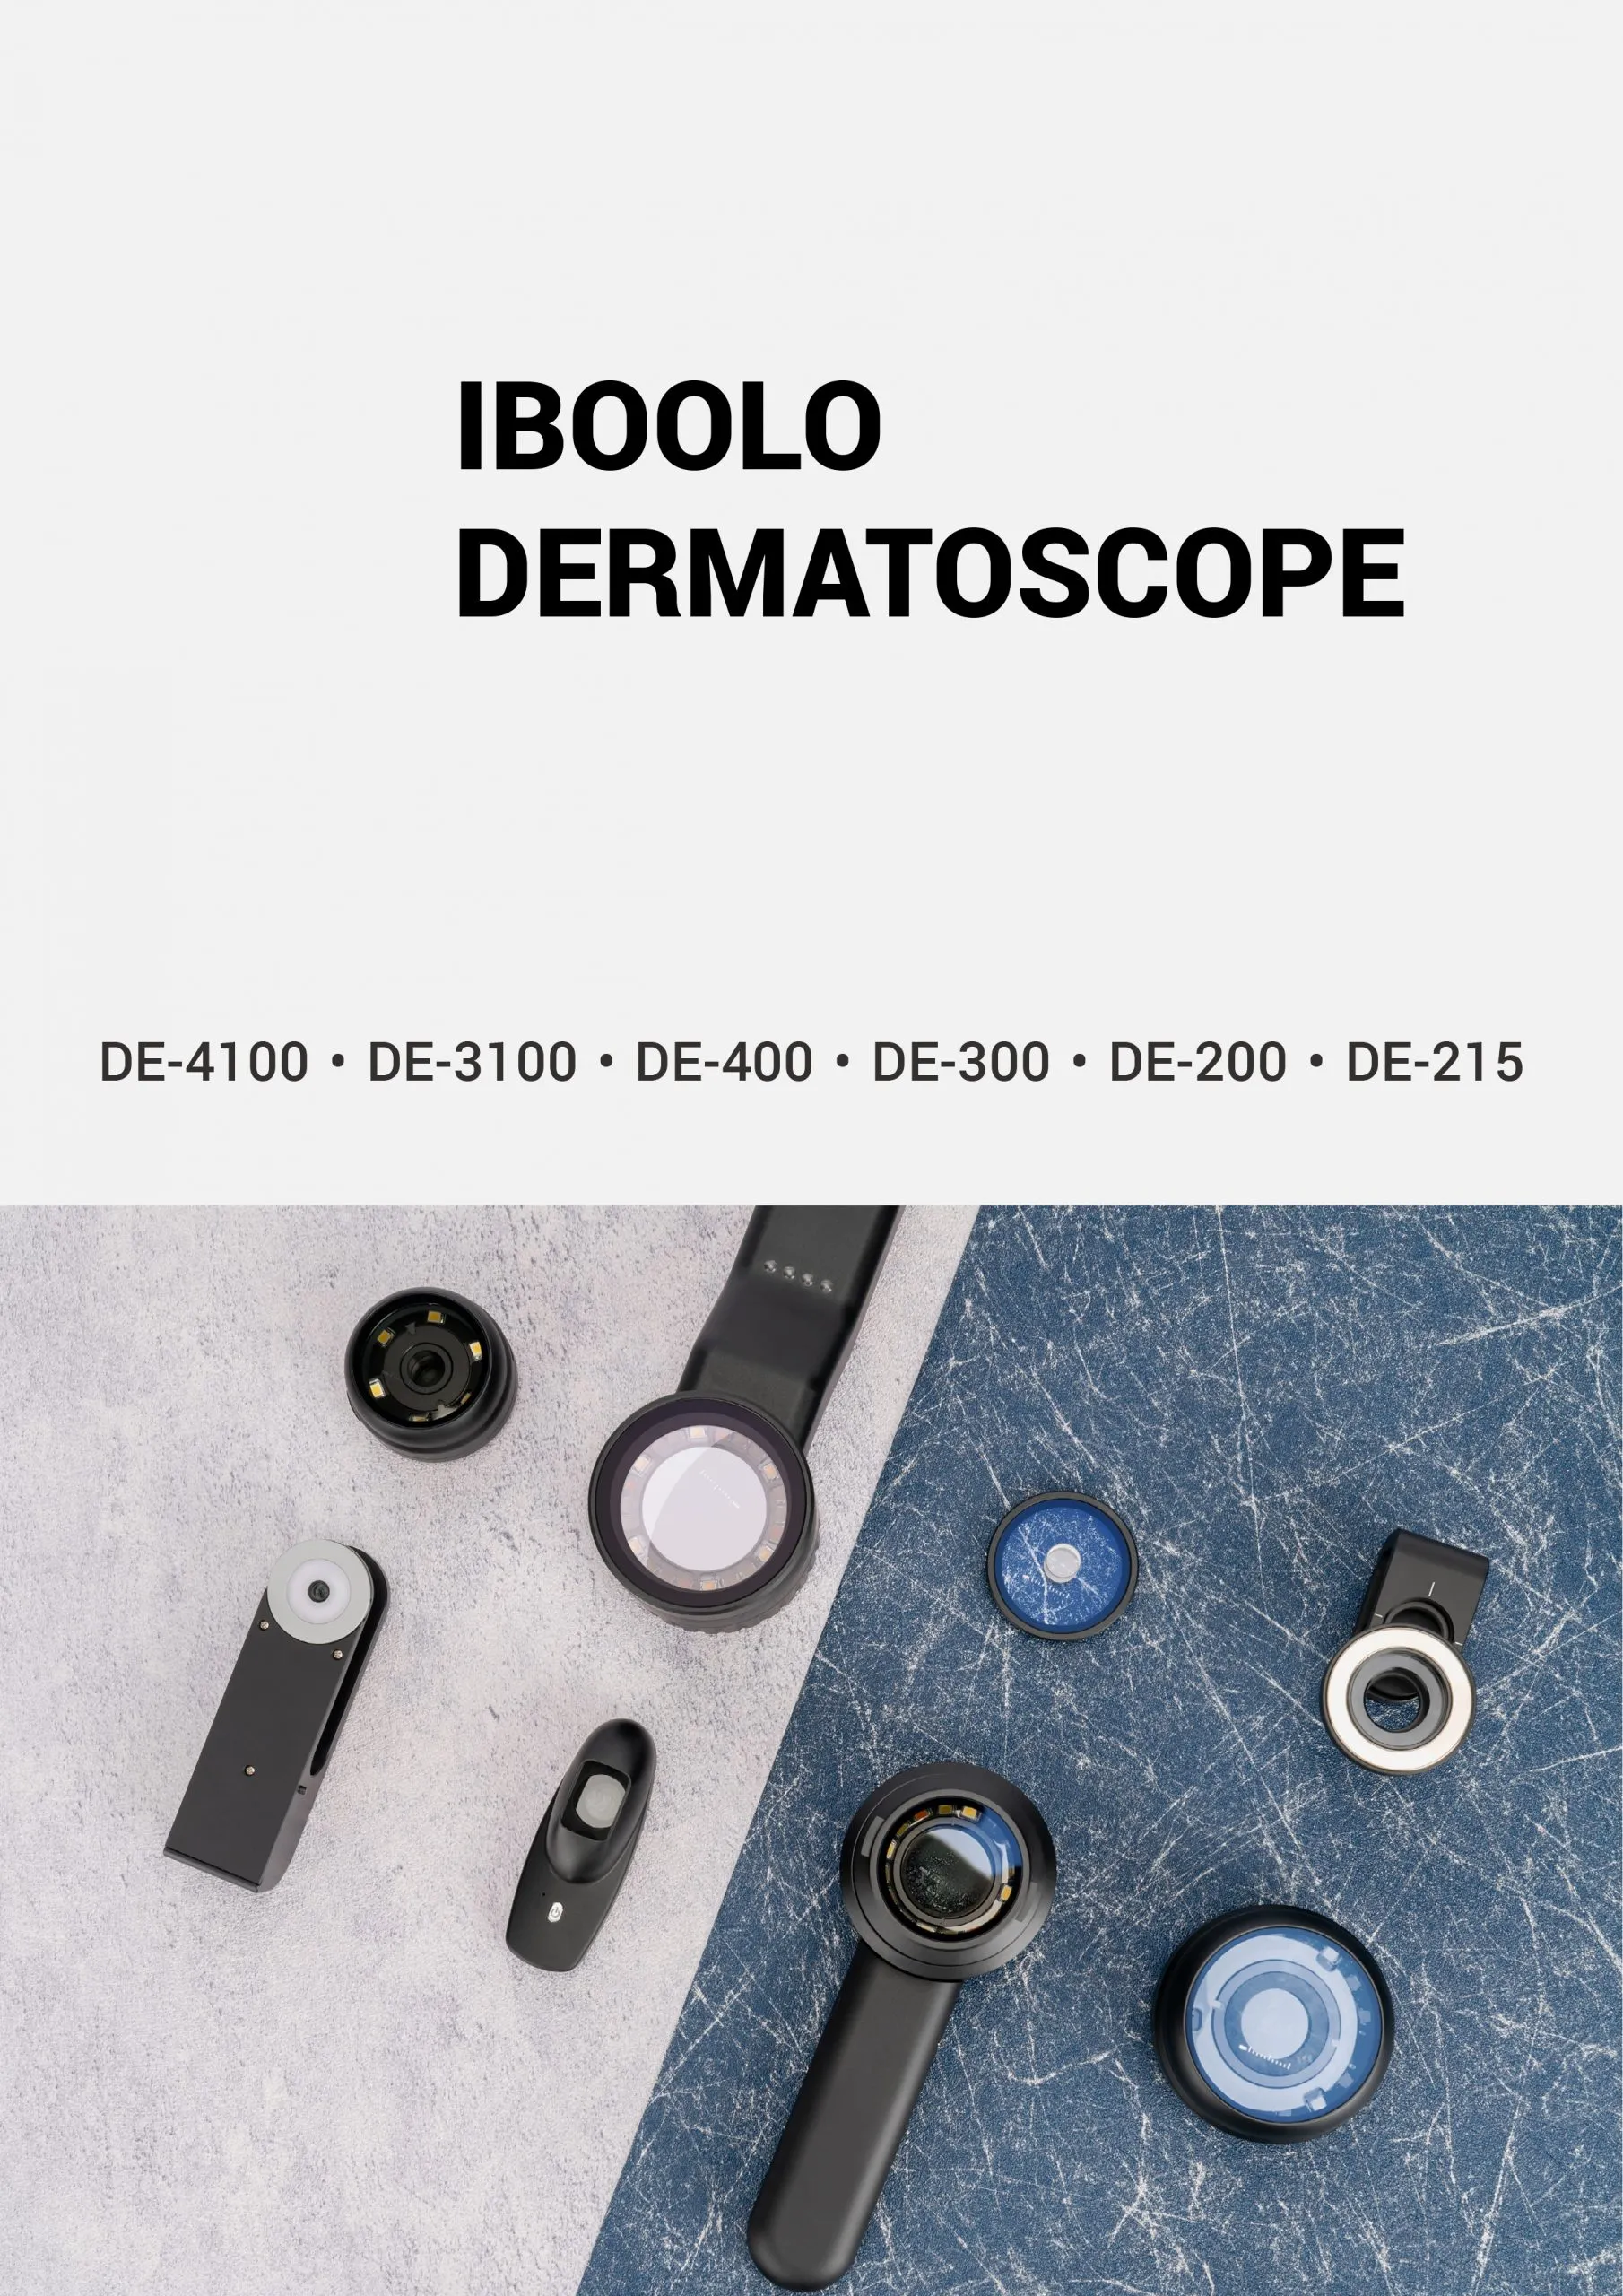 China handheld polarized dermatoscope